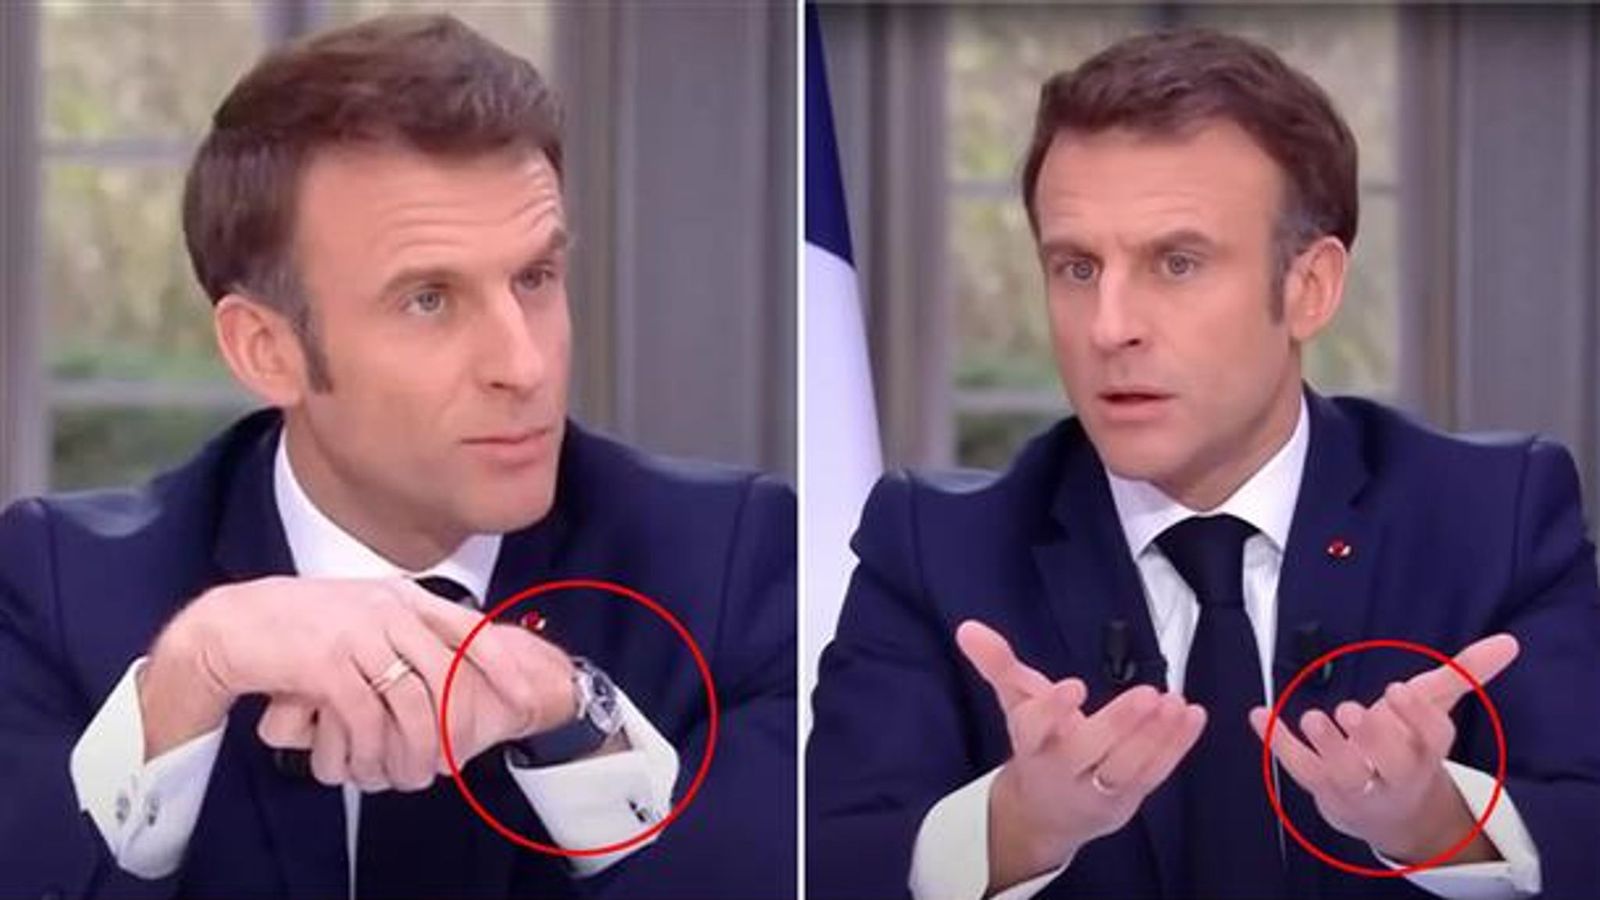 Францын ерөнхийлөгч телевизийн ярилцлагын үеэр зүүсэн цагаа нуугаад шүүмжлүүлжээ